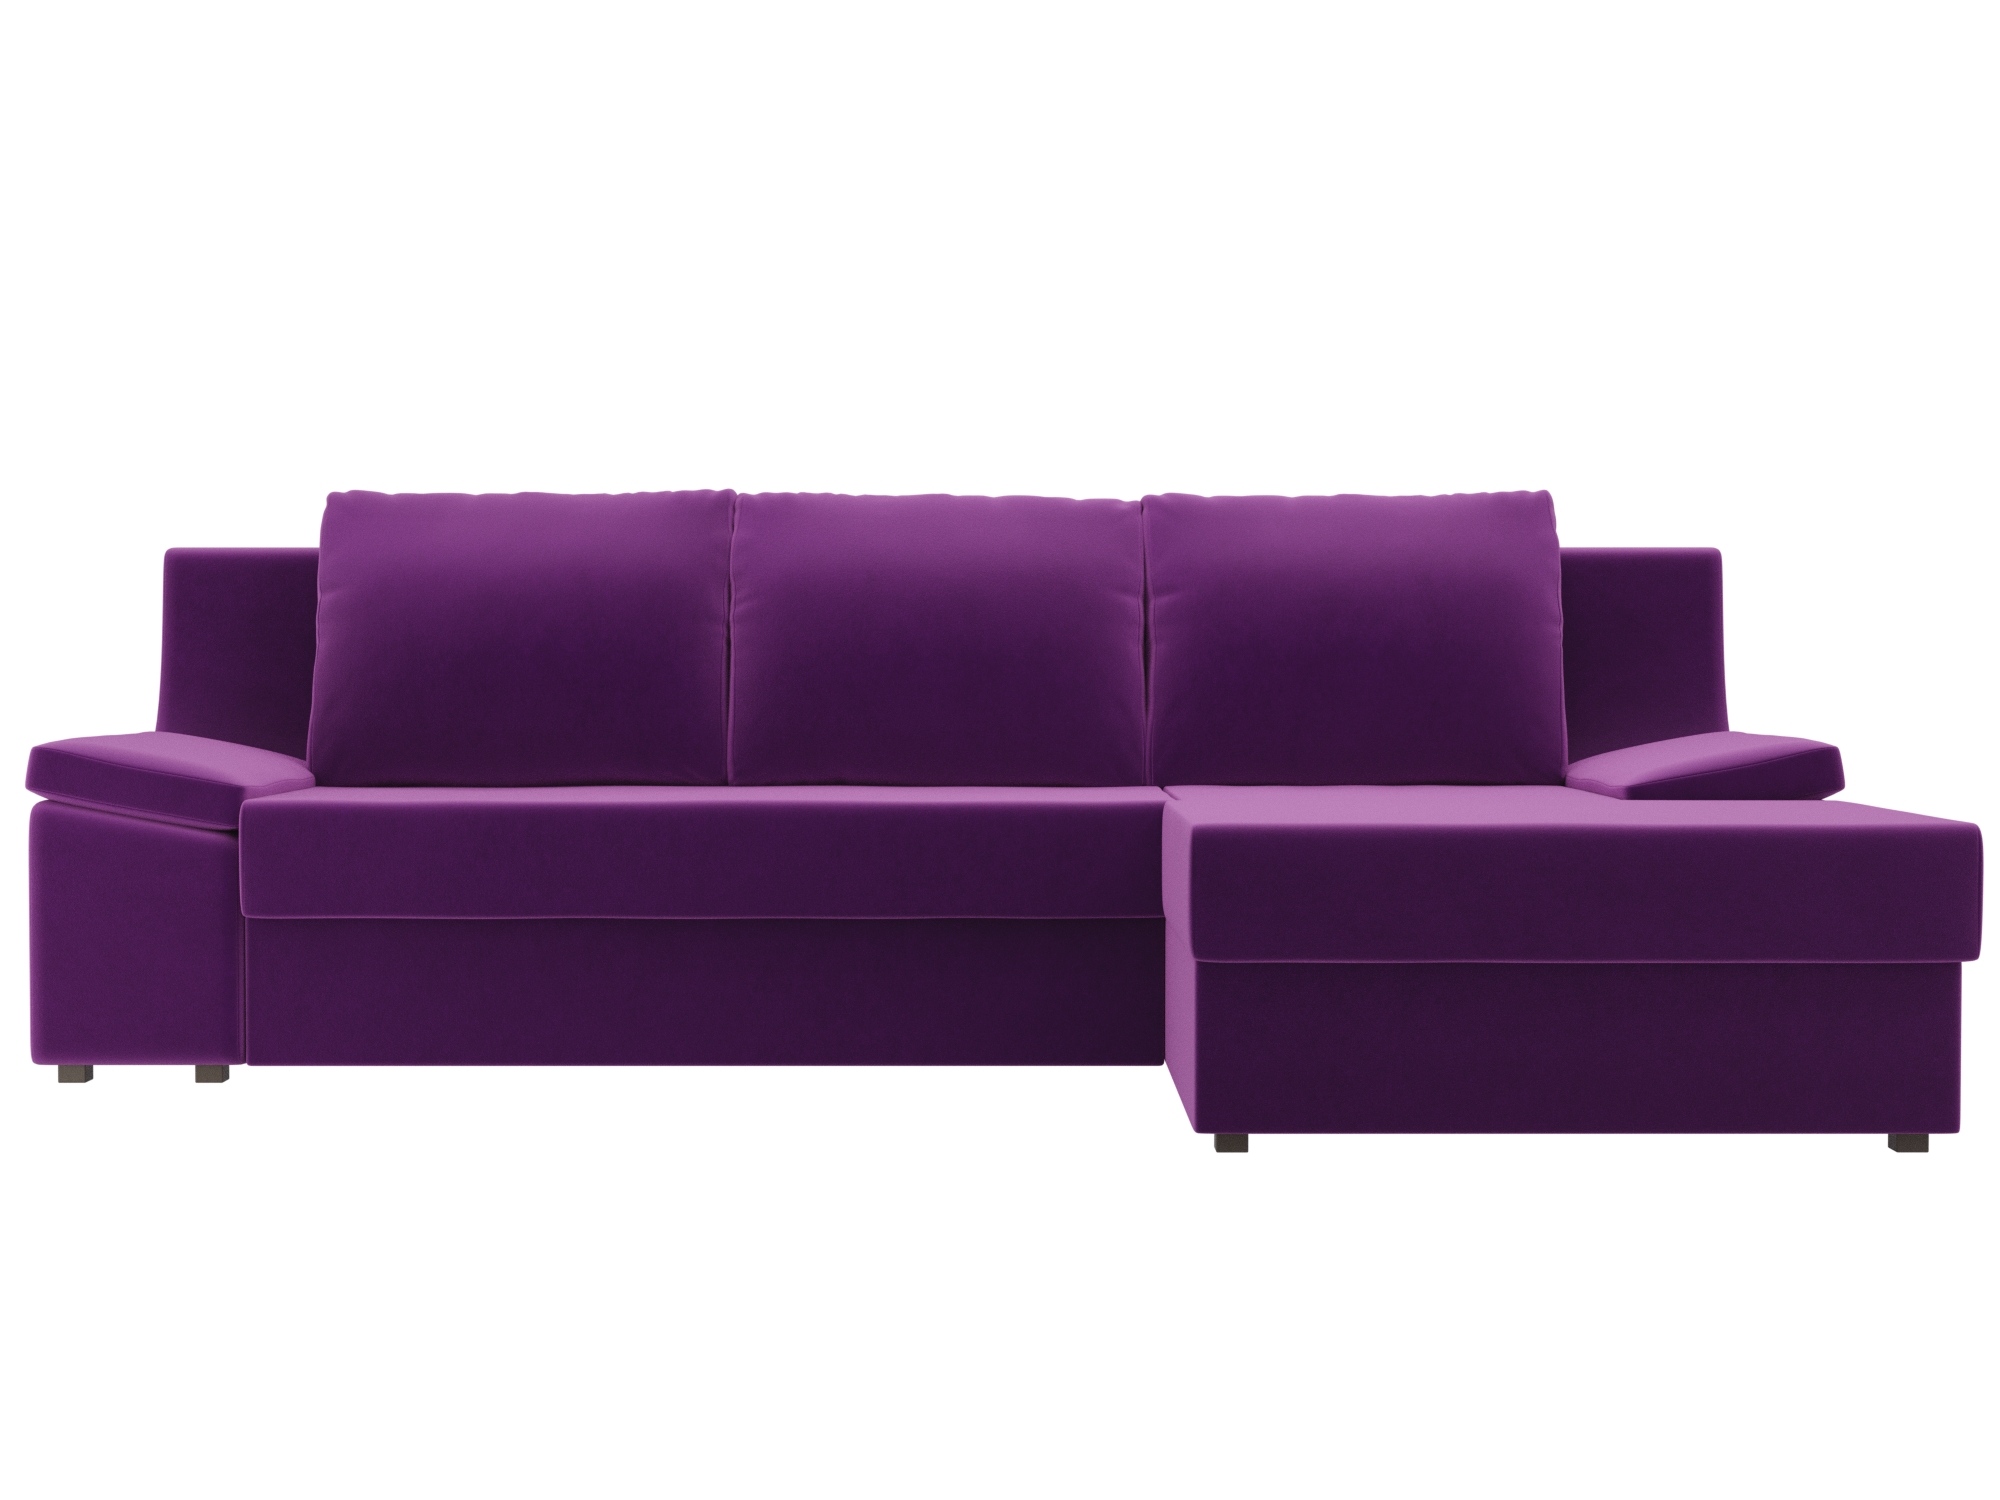 Угловой диван Челси Правый MebelVia Фиолетовый, Микровельвет, ЛДСП диван угловой мебелико белла у микровельвет фиолетовый правый